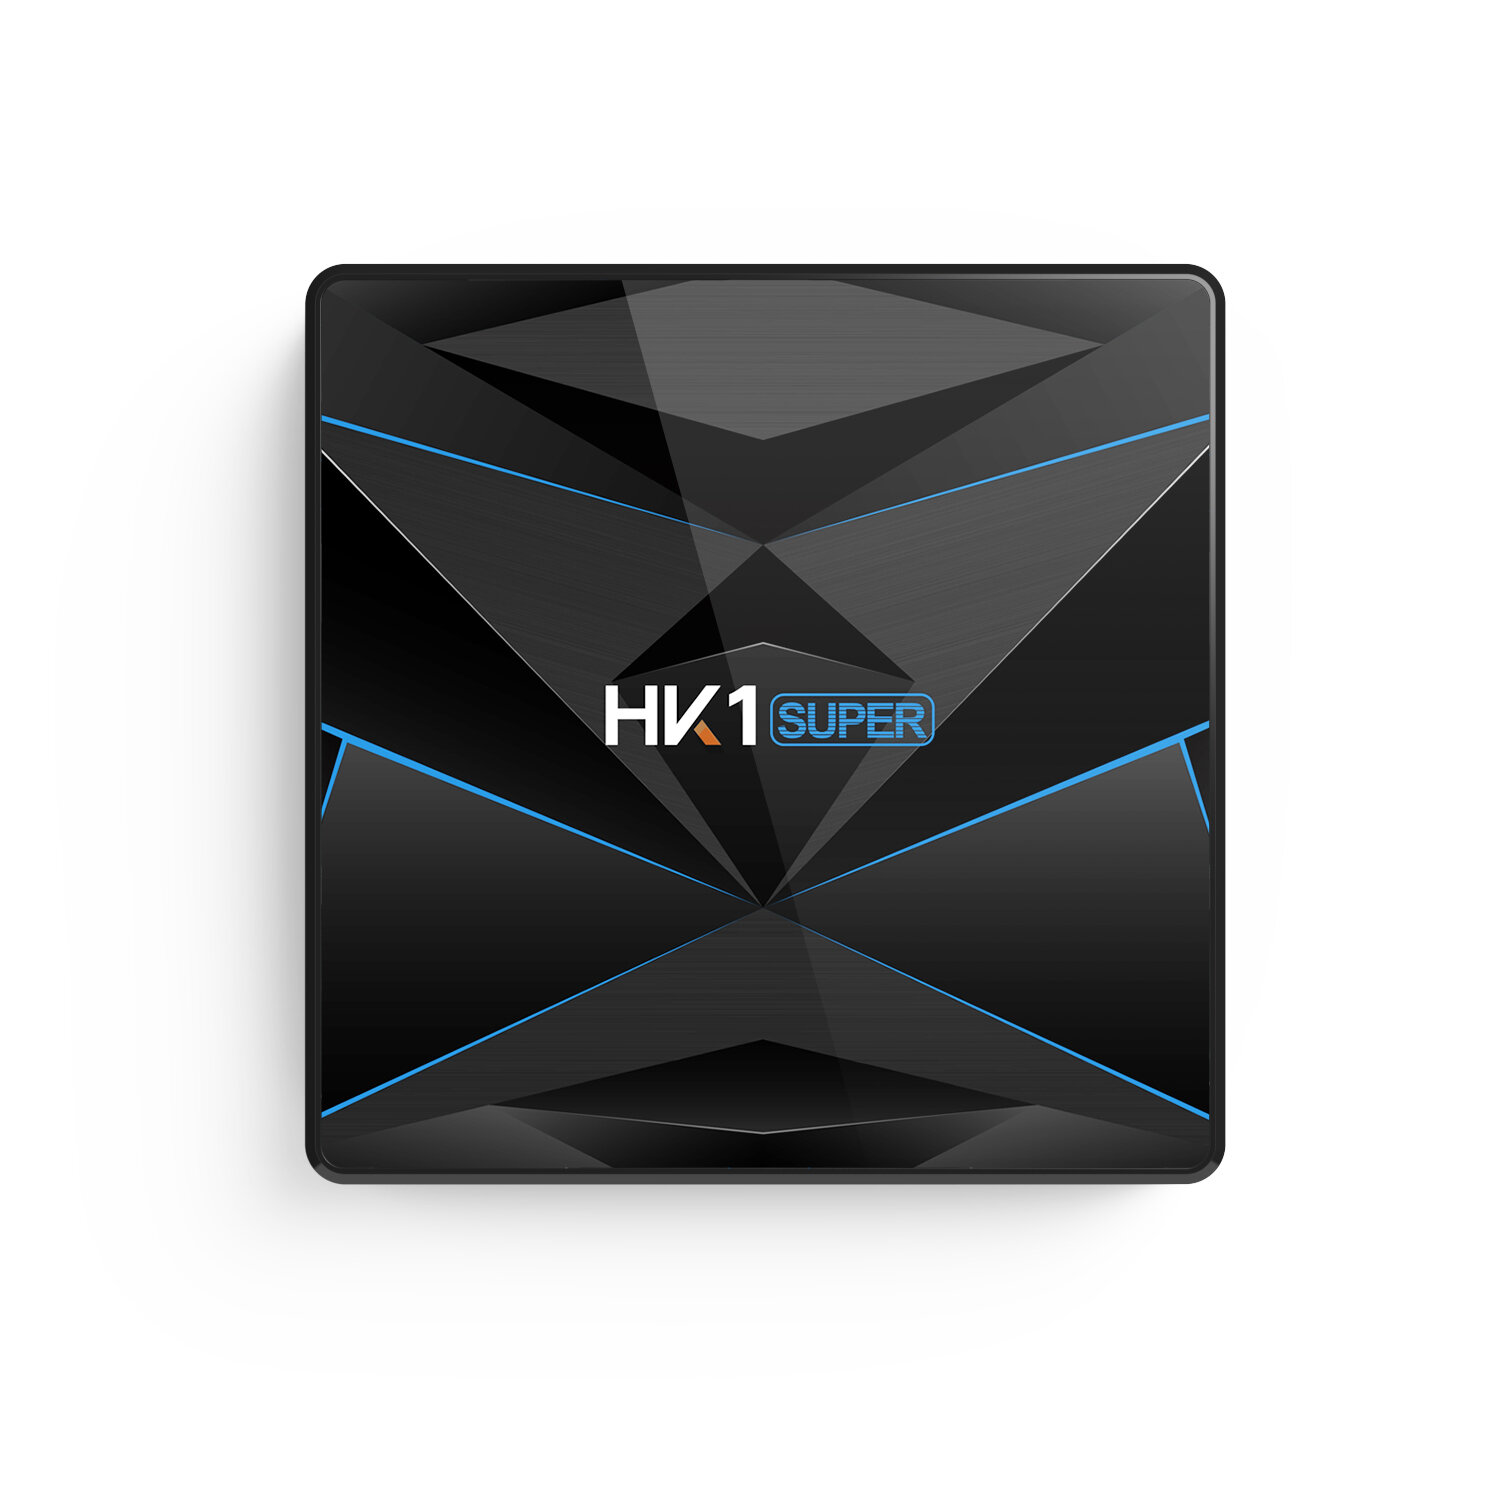 

HK1 Super RK3318 4GB RAM 32GB ROM 5G WIFI bluetooth 4.0 Android 9.0 4K TV Box